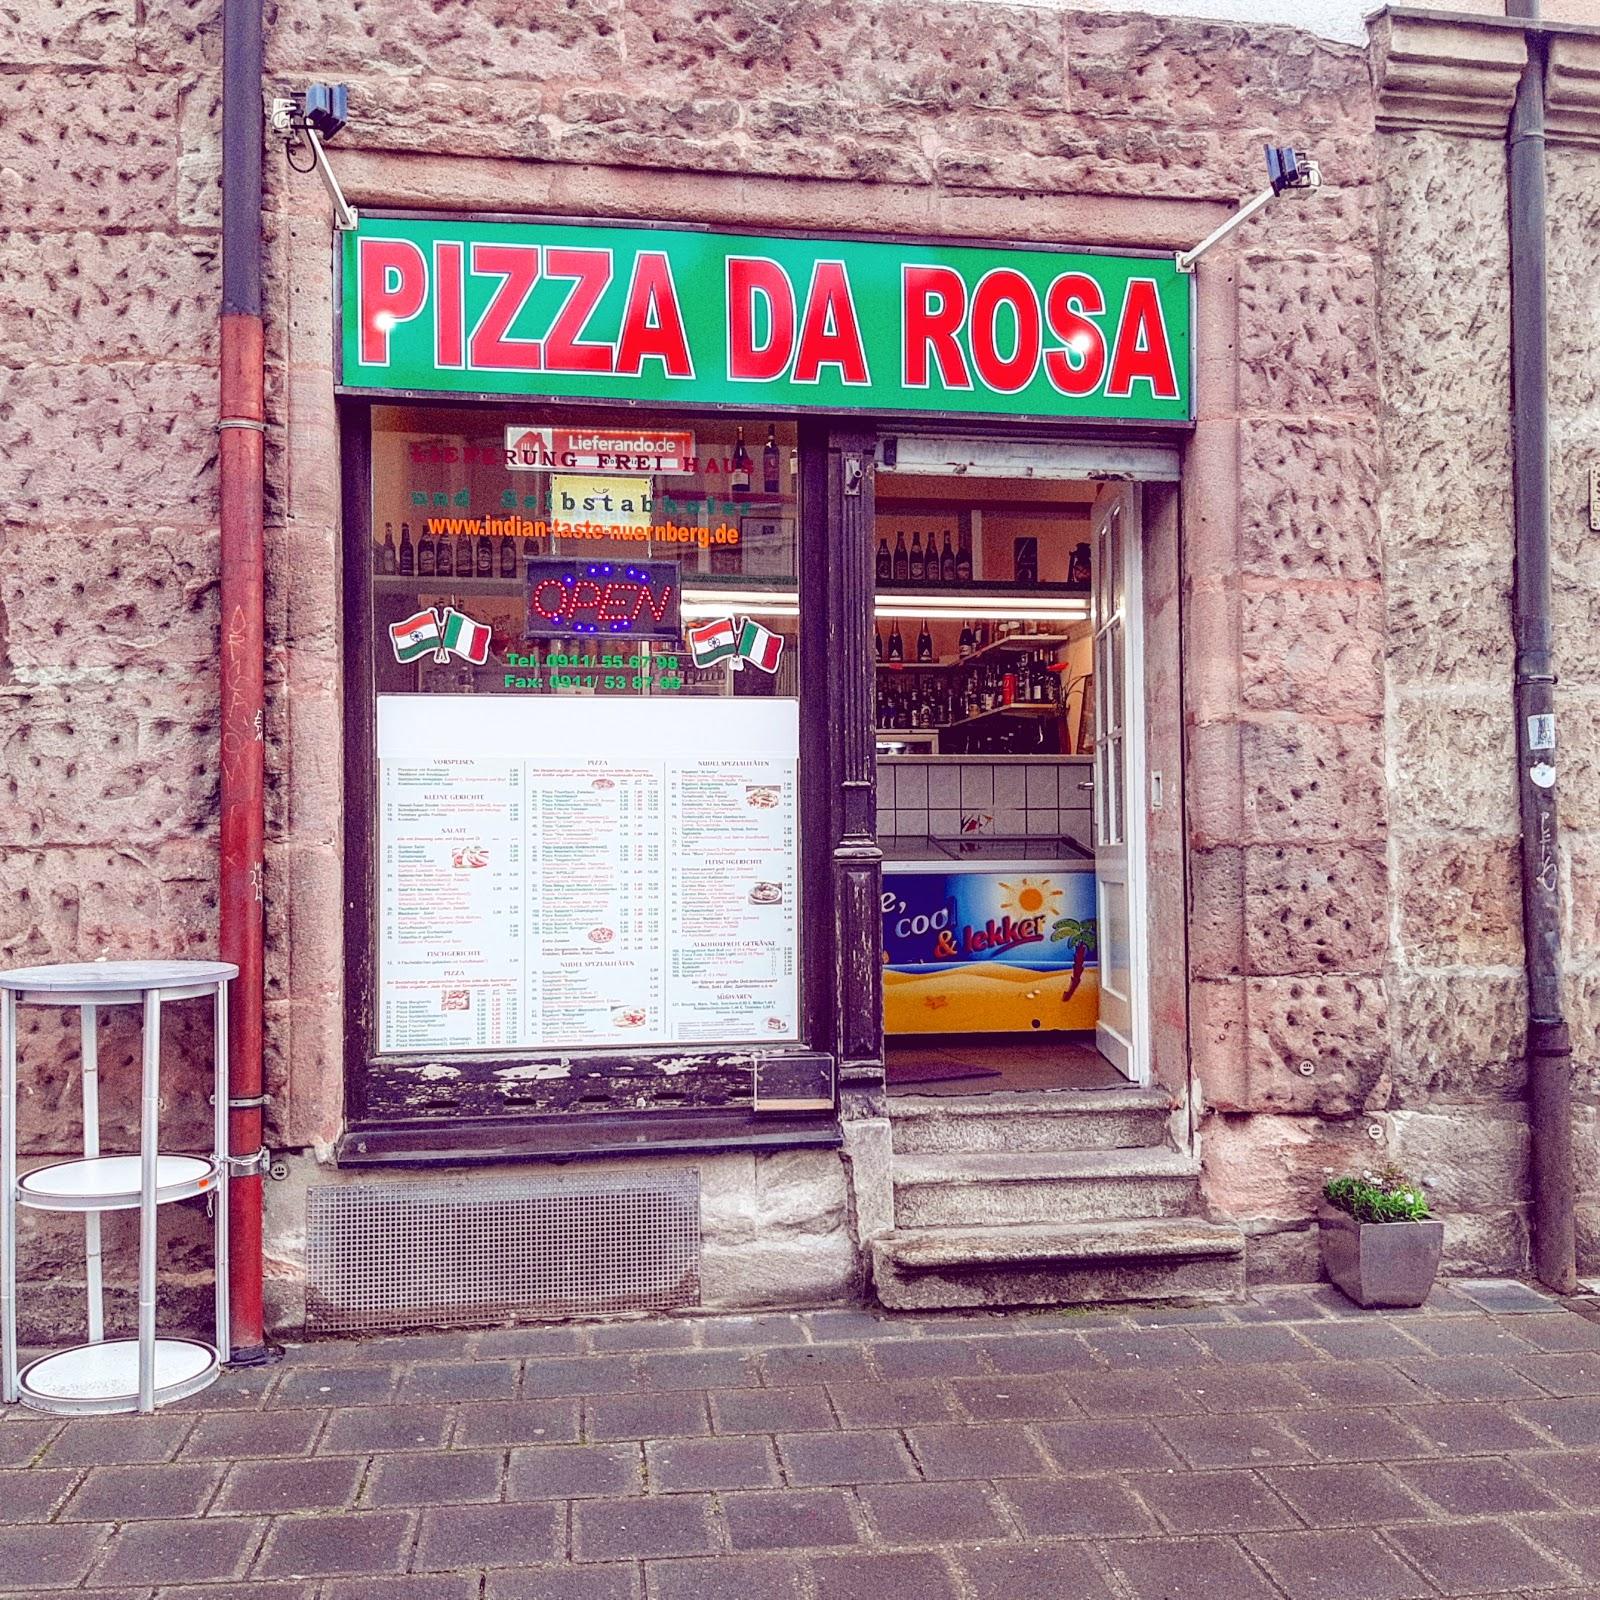 Restaurant "Pizza da Rosa" in Nürnberg